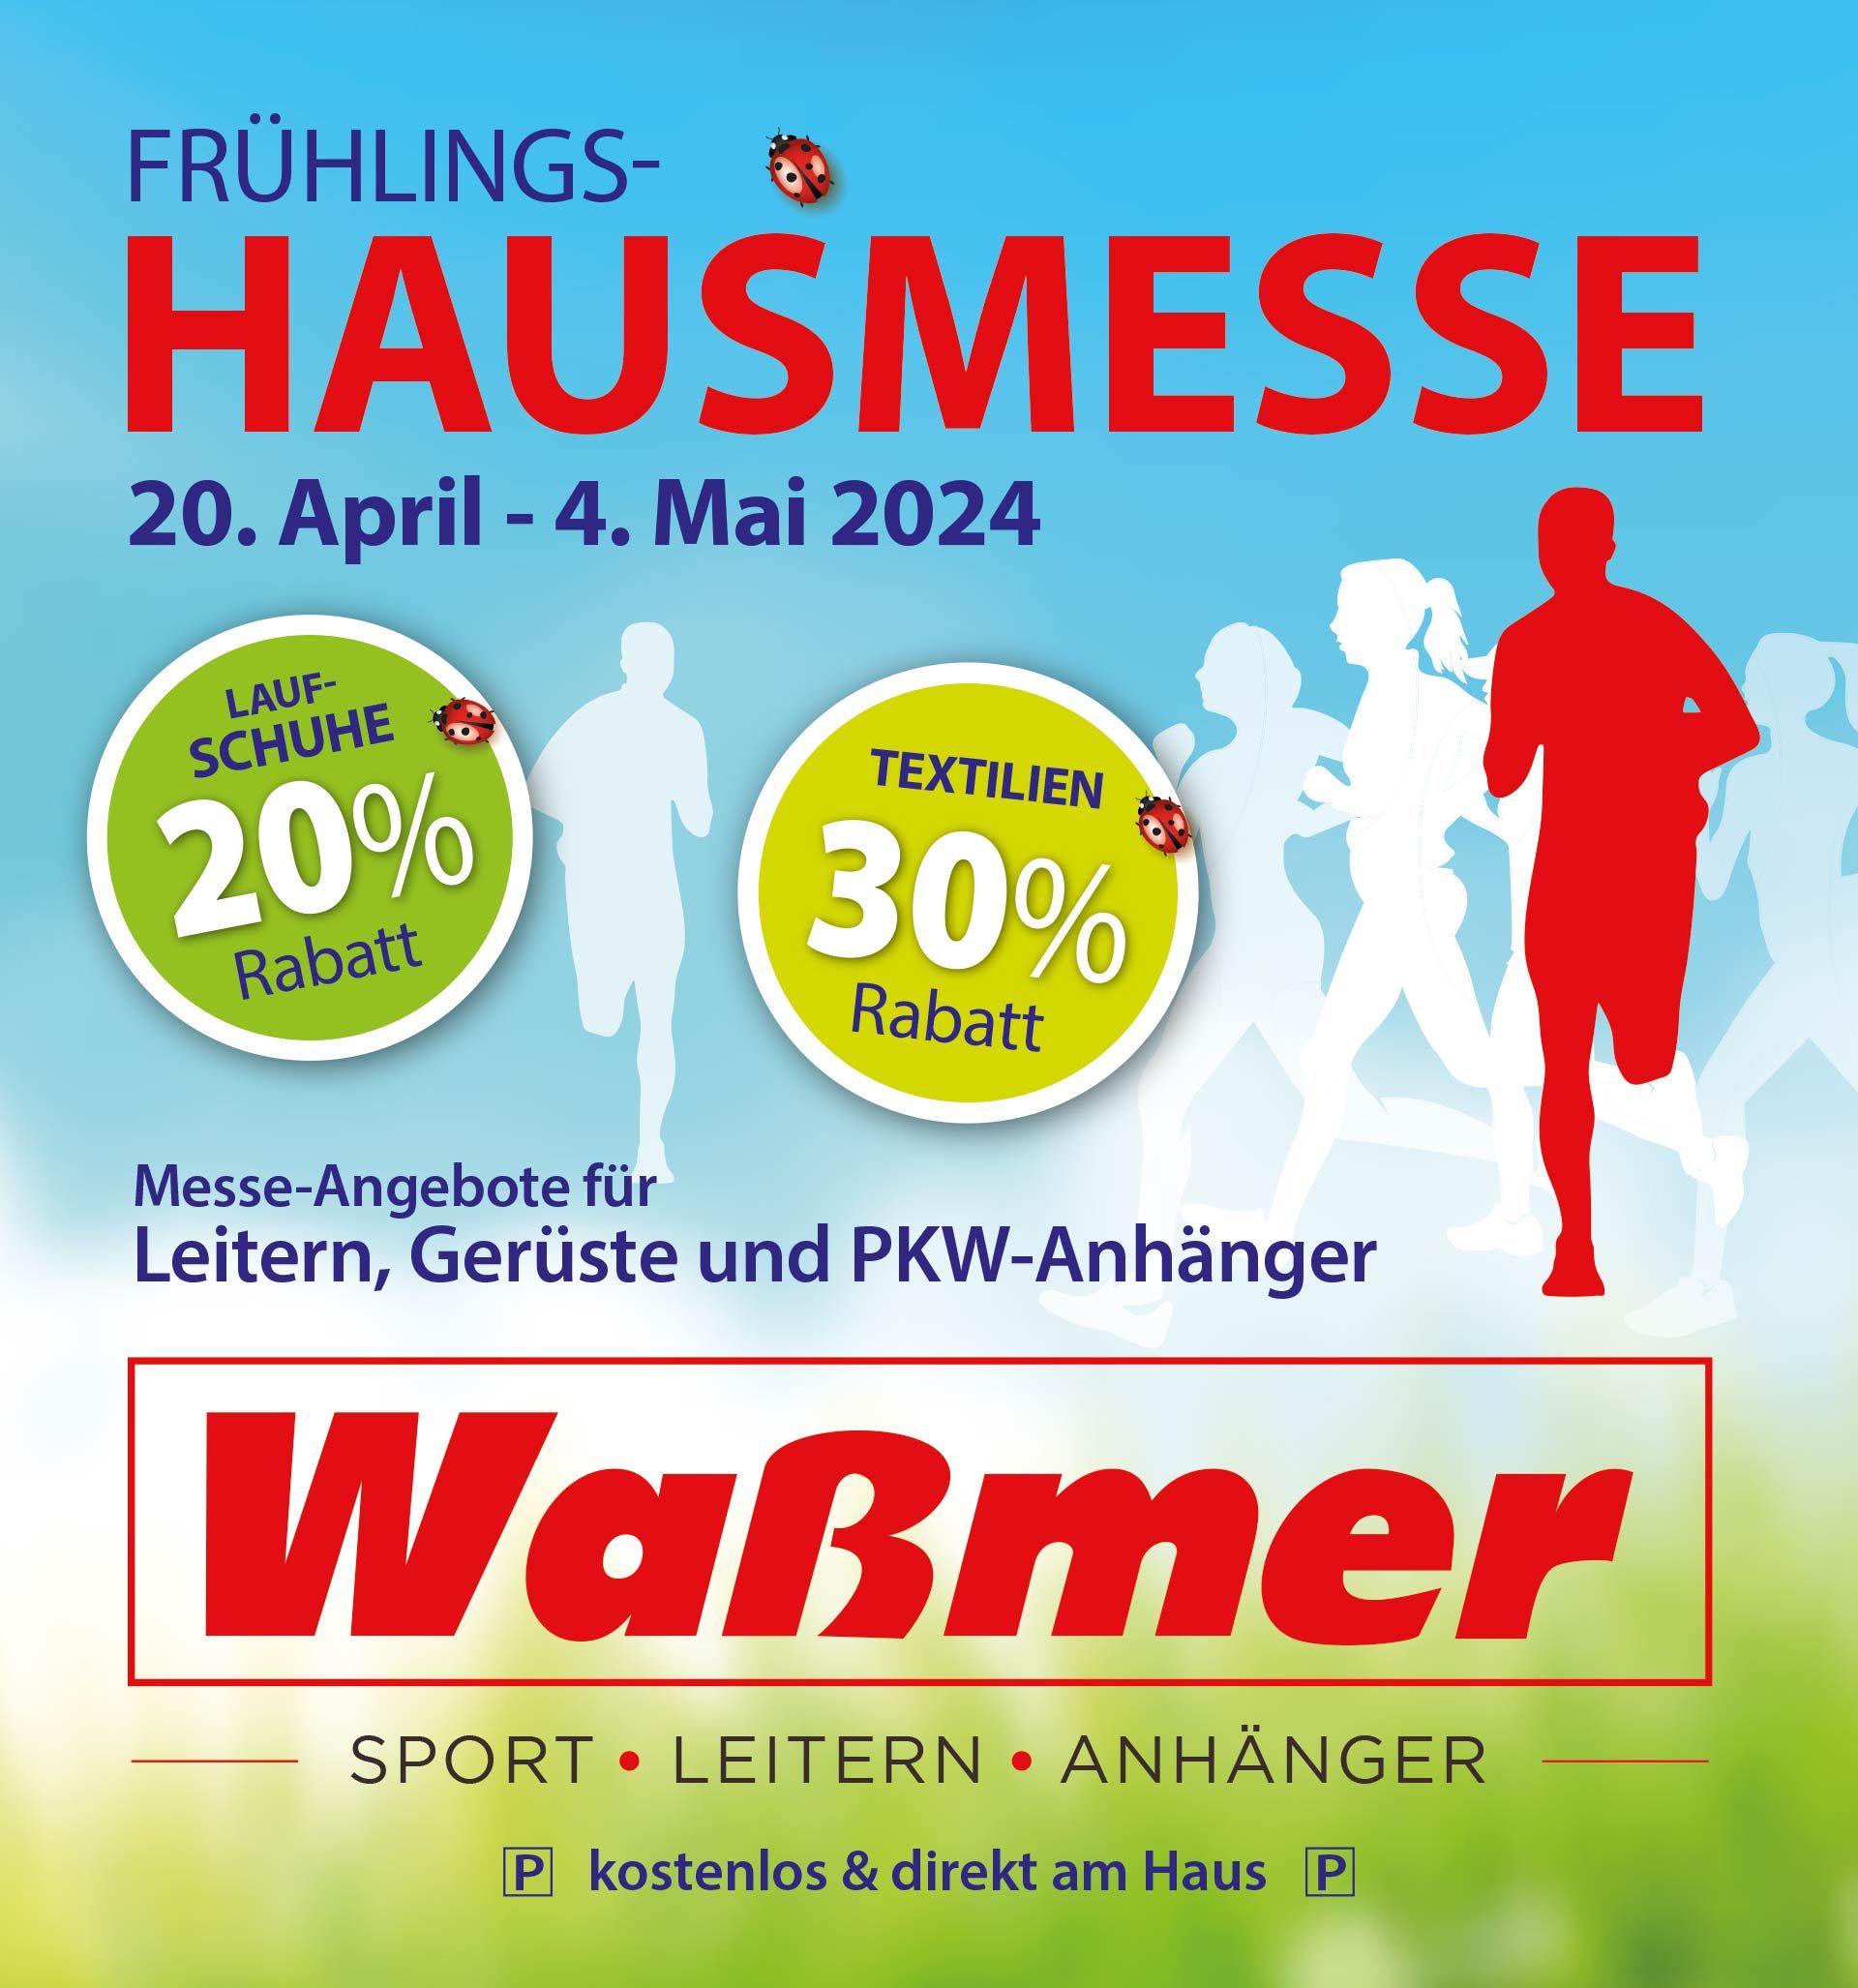 Frühlings-Hausmesse bei Sport + Leitern Waßmer in Bad Säckingen mit 20% Rabatt auf Laufschuhe und 30% auf Textilien - vom 20. April bi s4. Mai